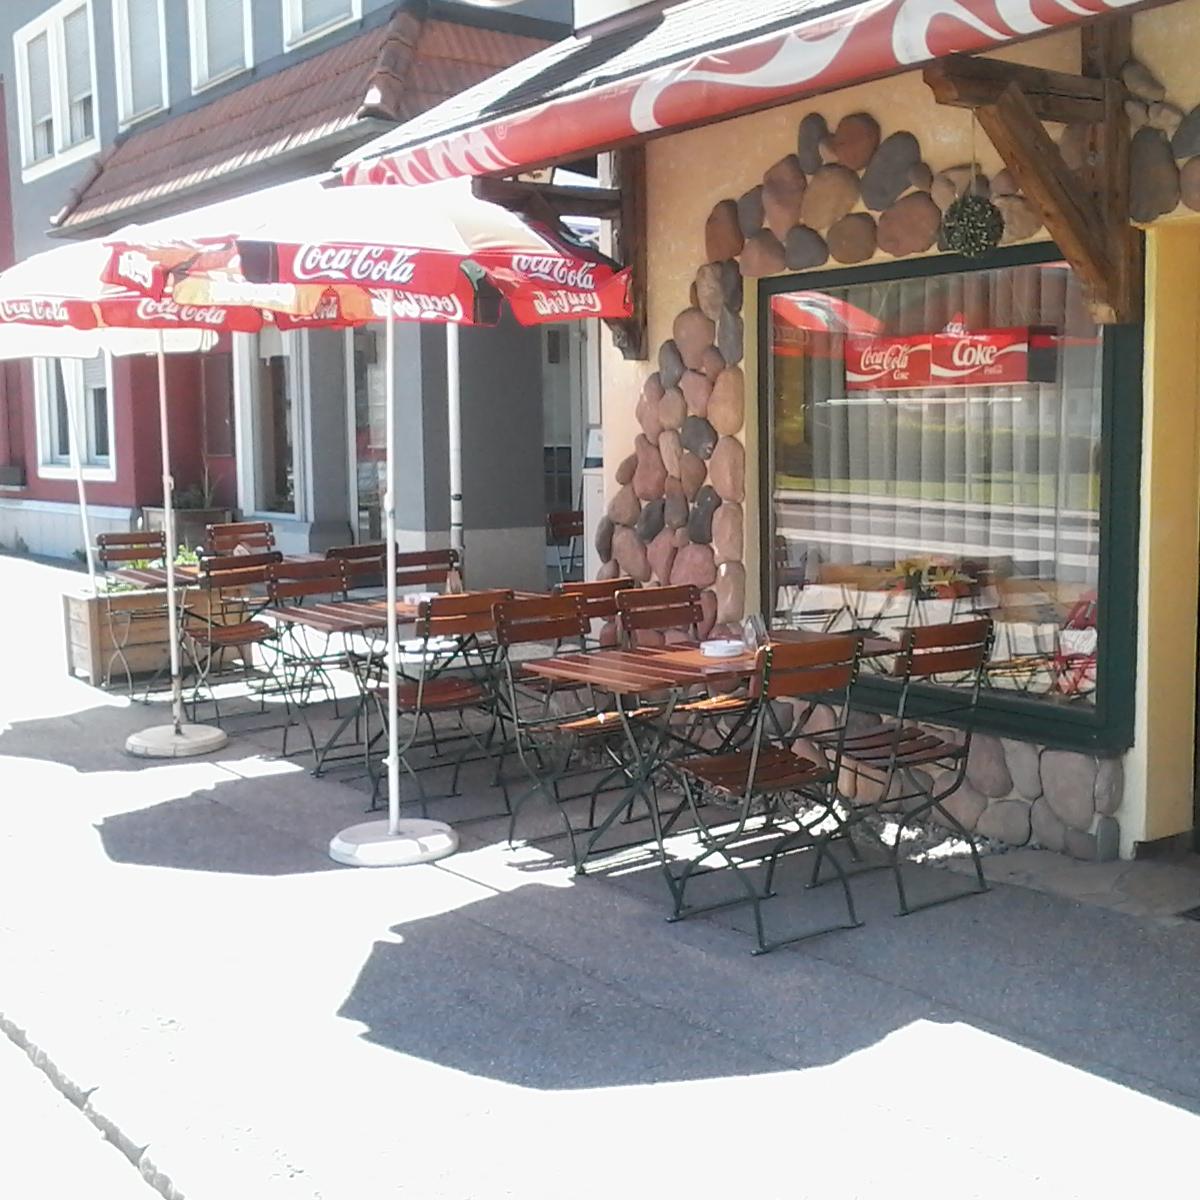 Restaurant "Pizzeria Delphin" in Scharnstein